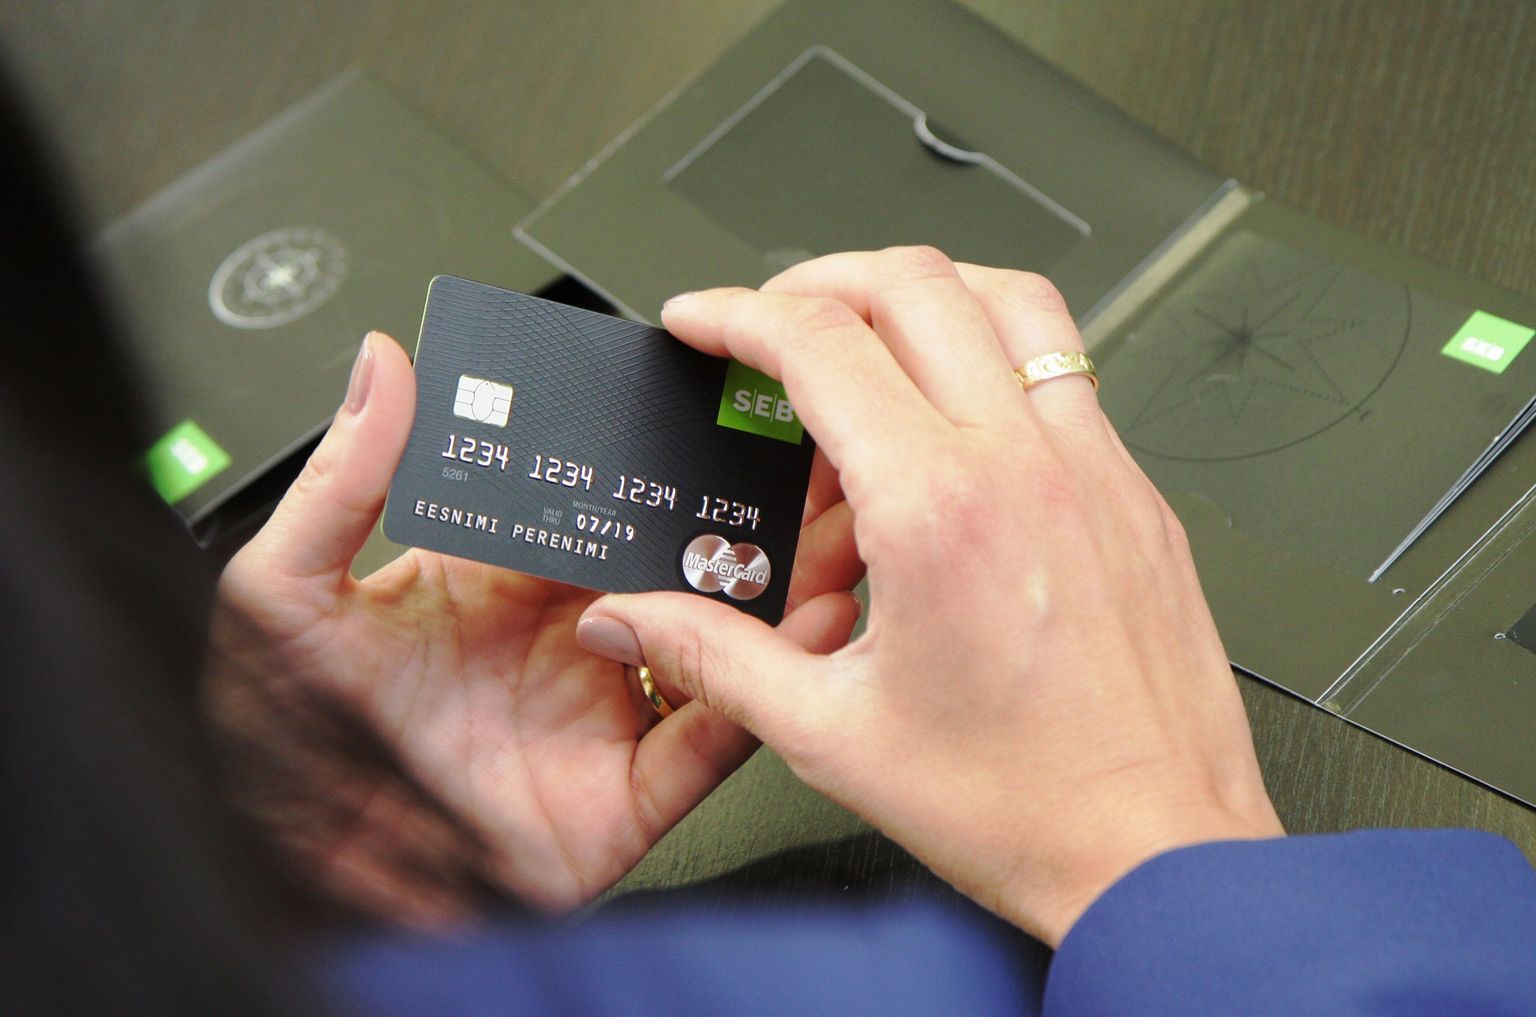 SEB hakkab pakkuma krediitkaarti, mis lubab Tallinna Lennujaamas kiiret turvakontrolli.